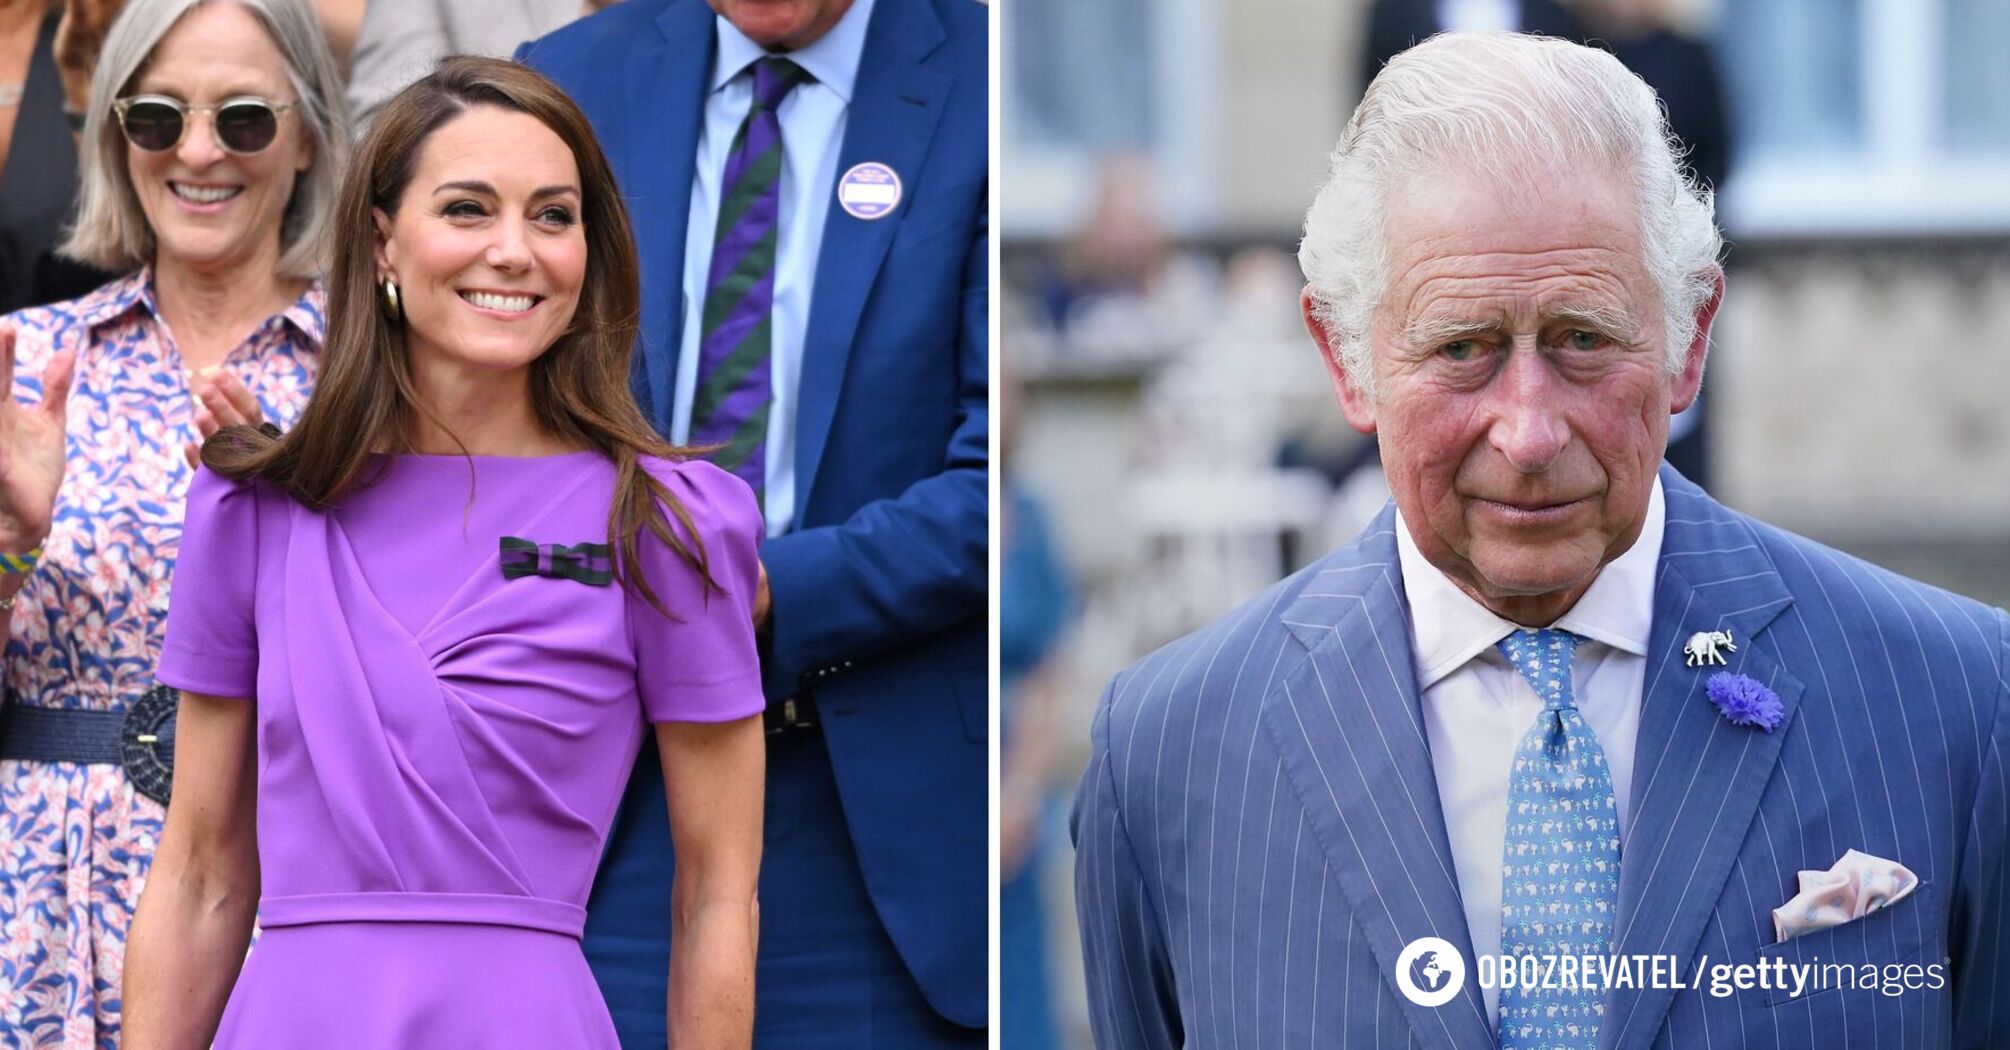 Oszałamiająca liczba listów, które król Karol i Kate Middleton otrzymali po zdiagnozowaniu raka, została nazwana